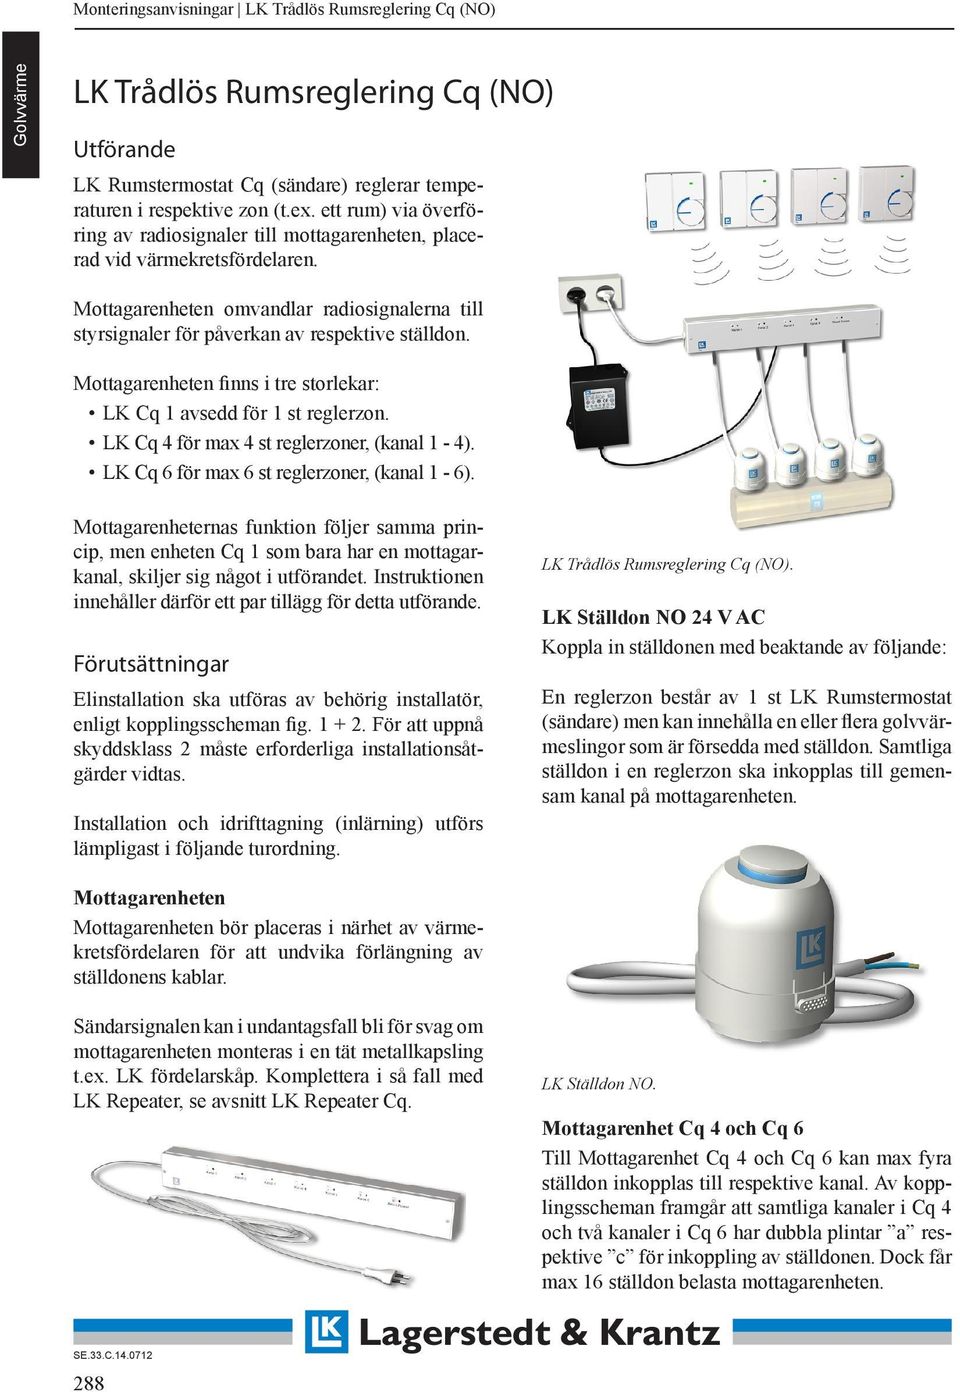 LK Trådlös Rumsreglering Cq (NO) - PDF Gratis nedladdning